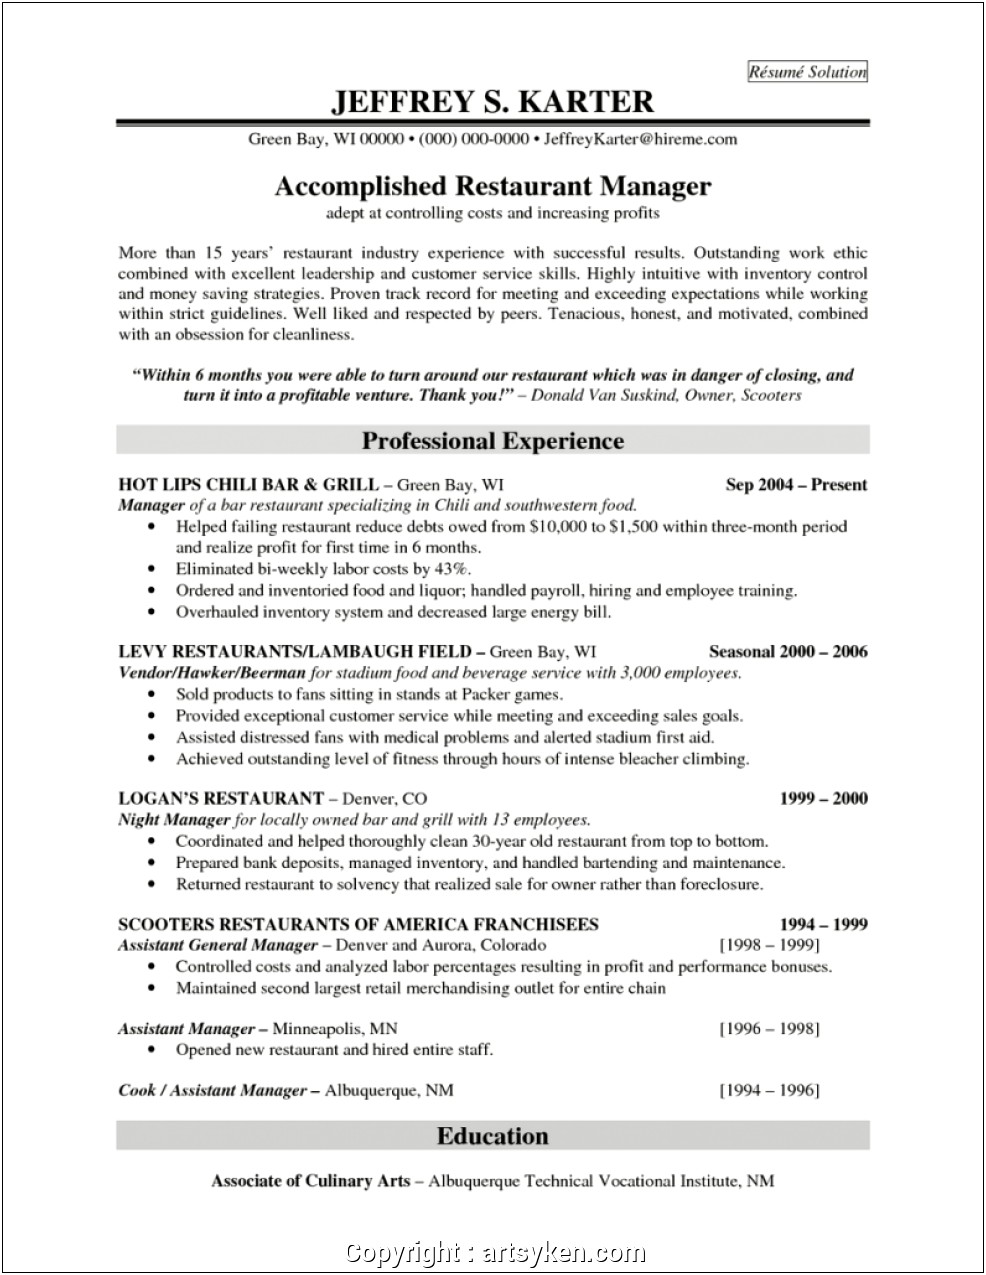 Resume For Restaurant Manager Job